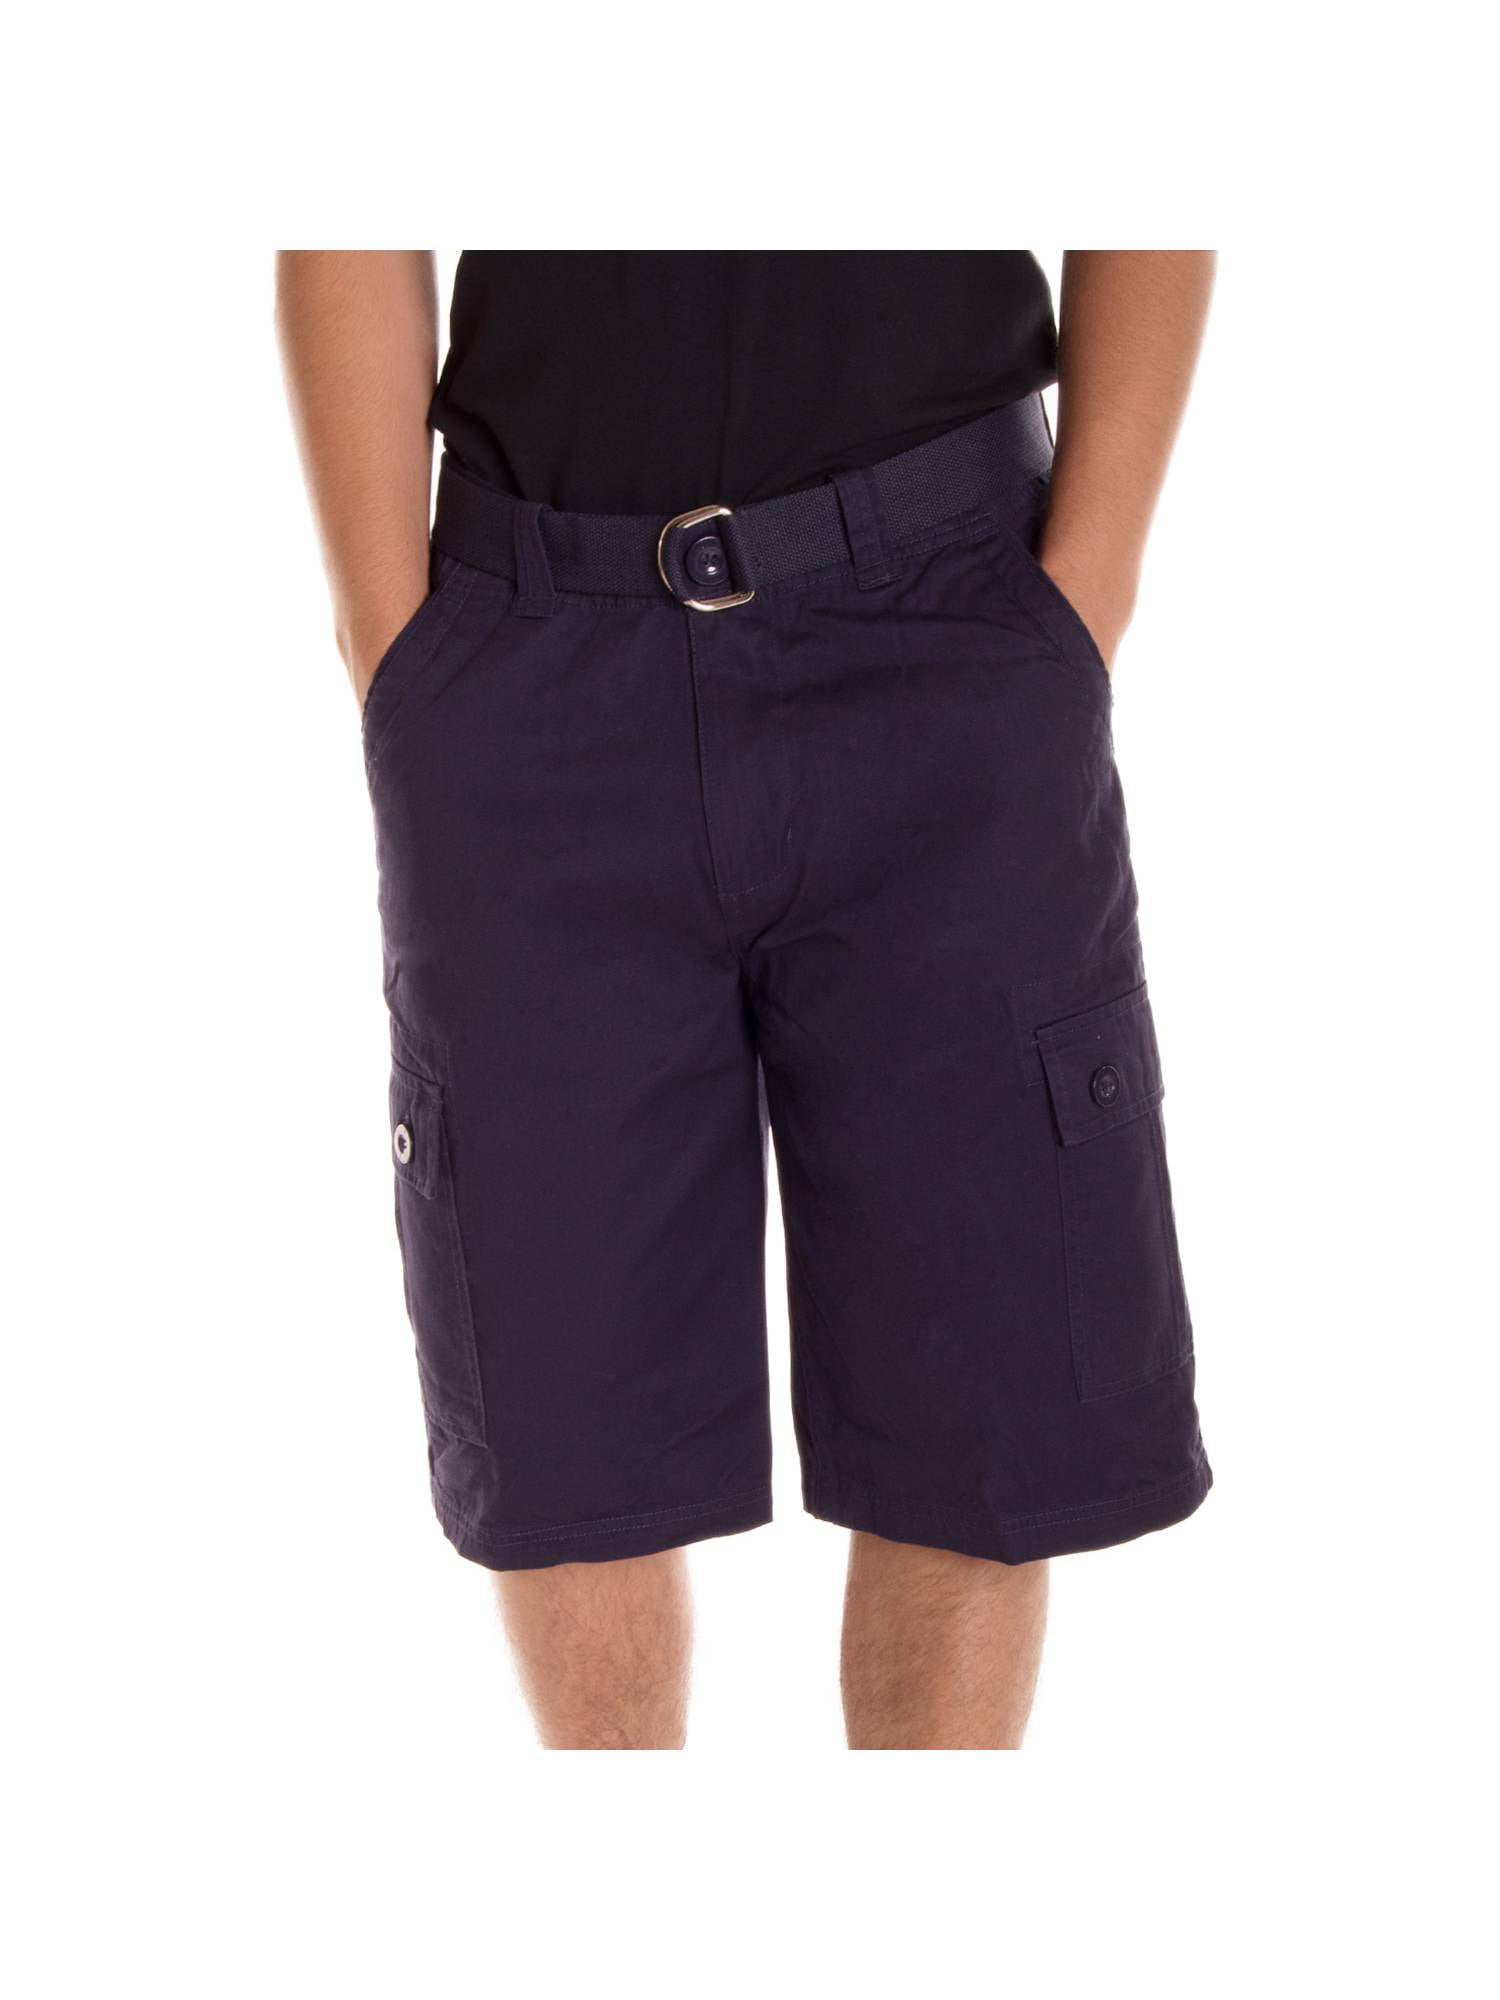 Altatac - Alta Designer Fashion Men s Cargo Shorts Twill Belt Included ...